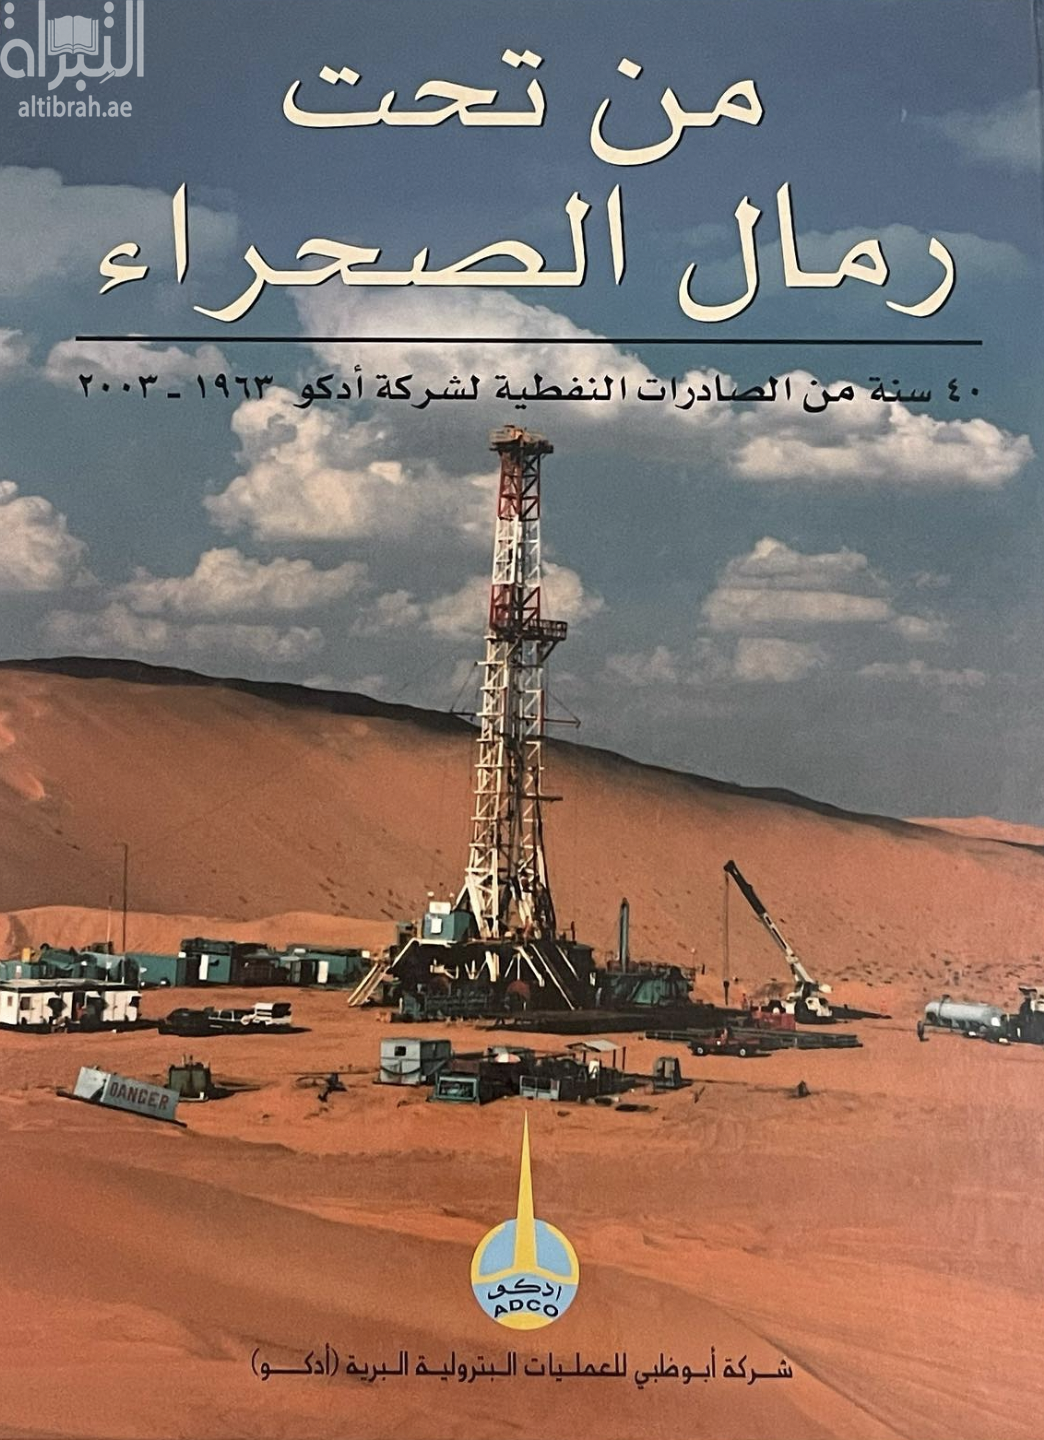 من تحت رمال الصحراء : 40 سنة من الصادرات النفطية لشركة أدكو 1963 - 2003 From under desert sands : ADCO's 40 years of oil exports 1963-2003